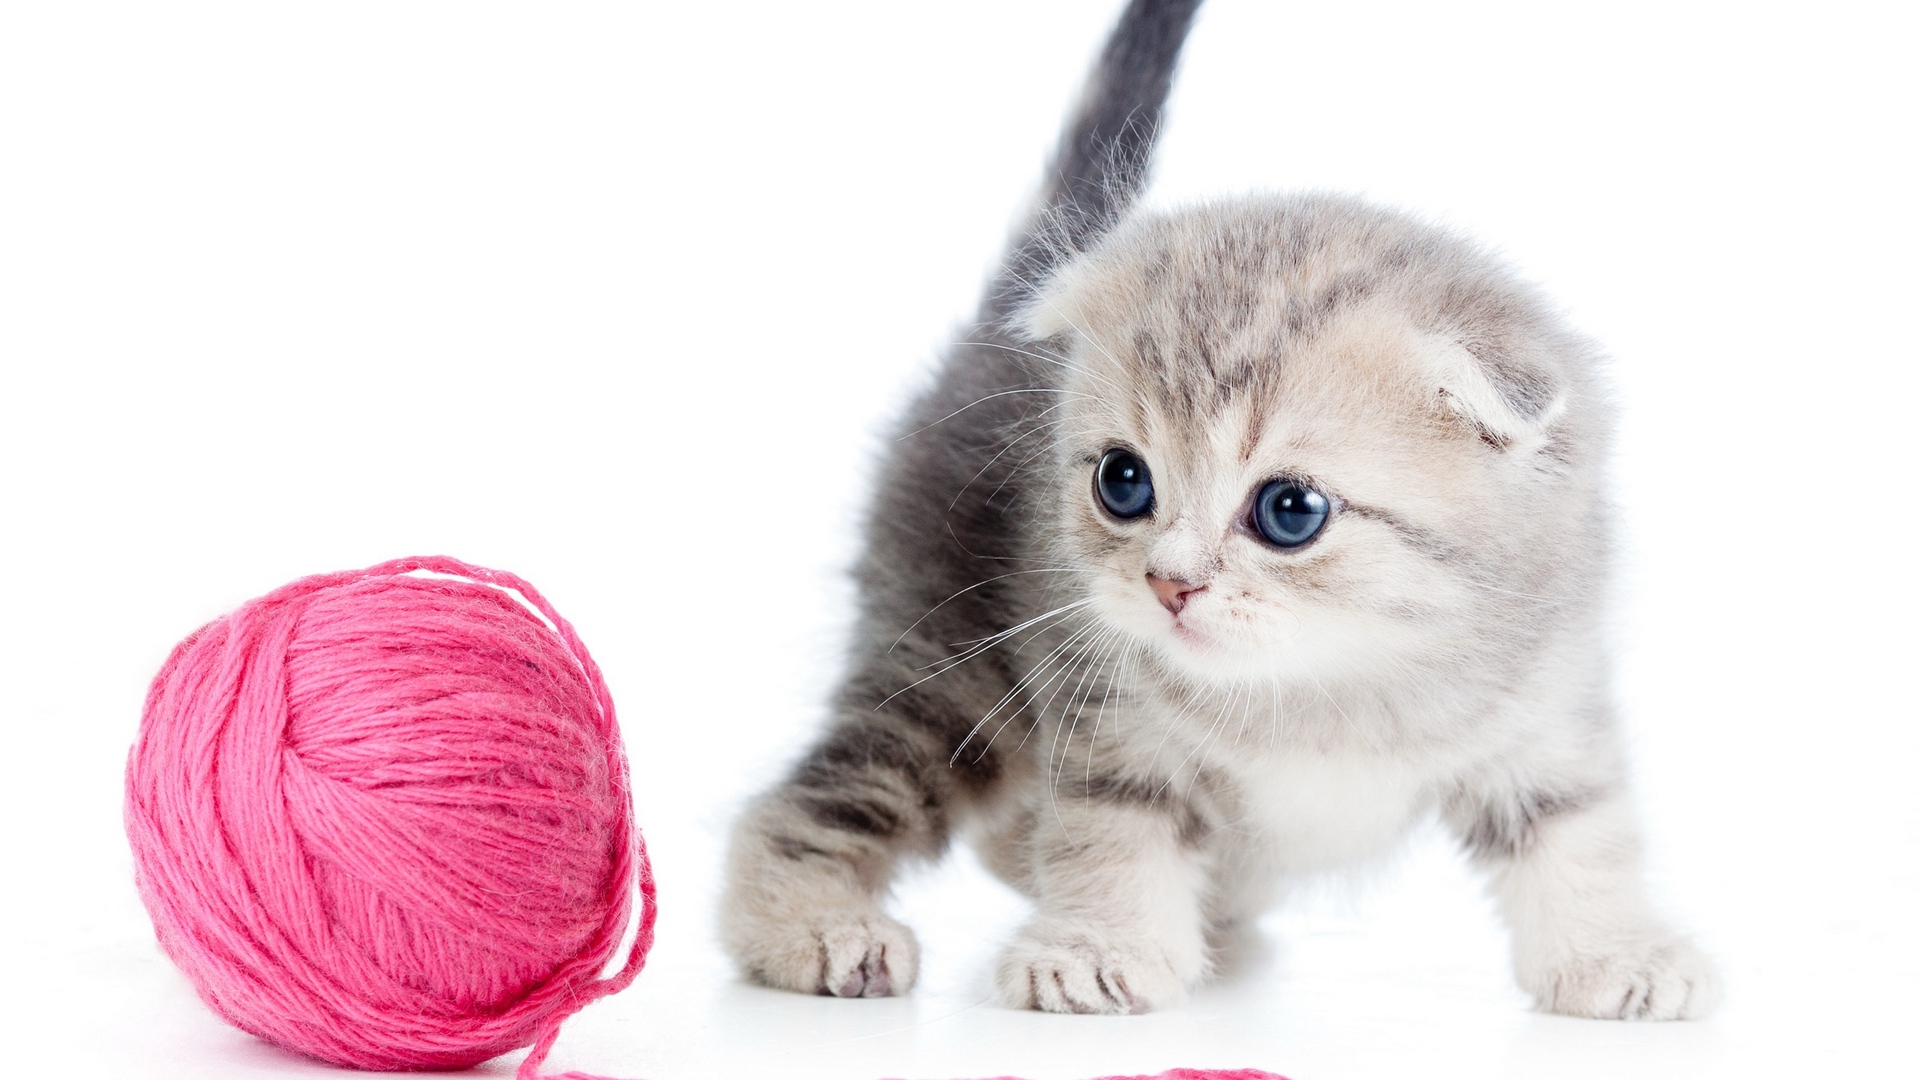 Cat kitten  ball thread